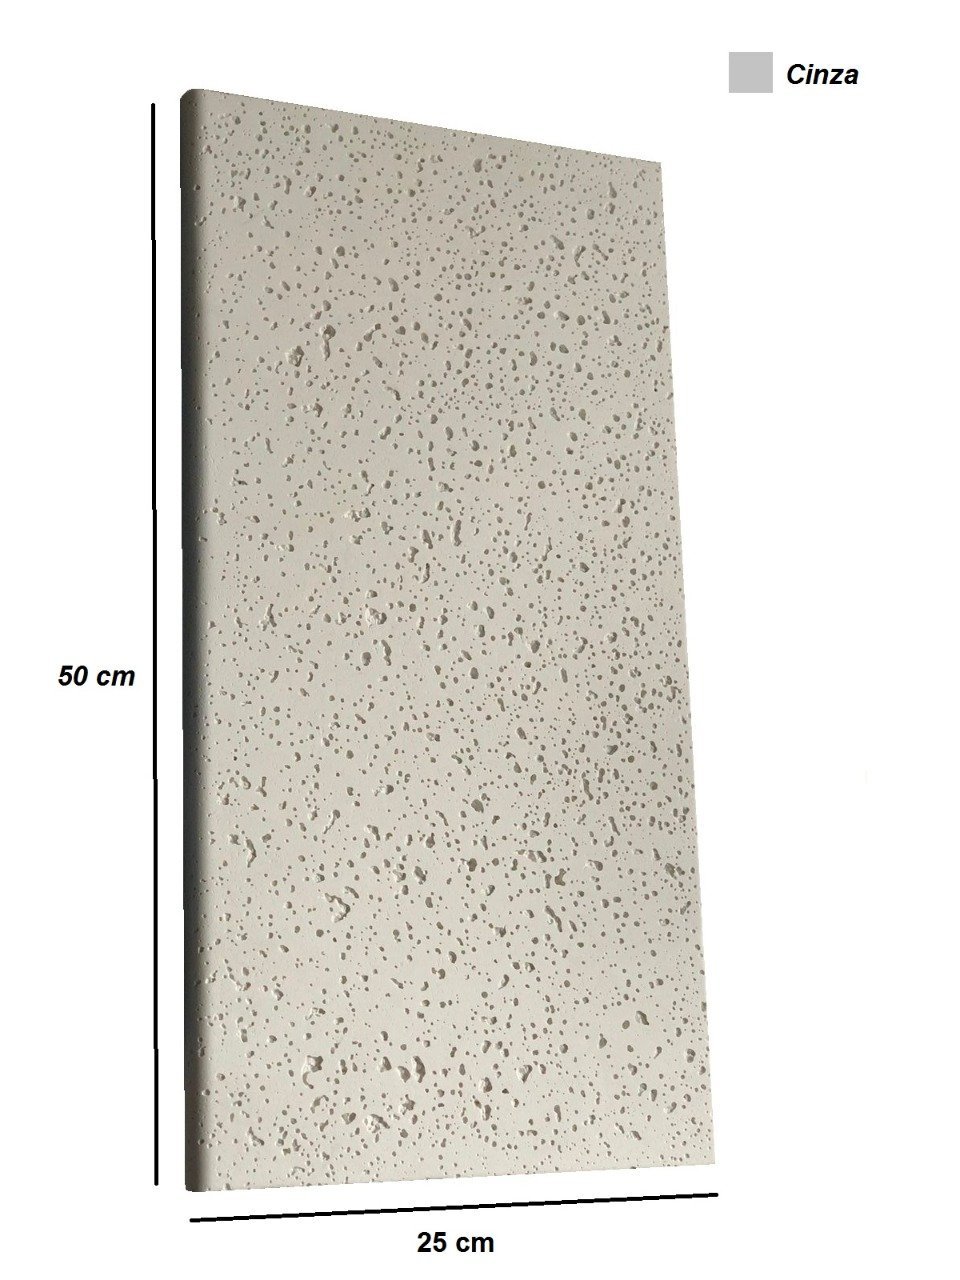 Borda Atérmica e Antiderrapante 50x25x1,5cm CI